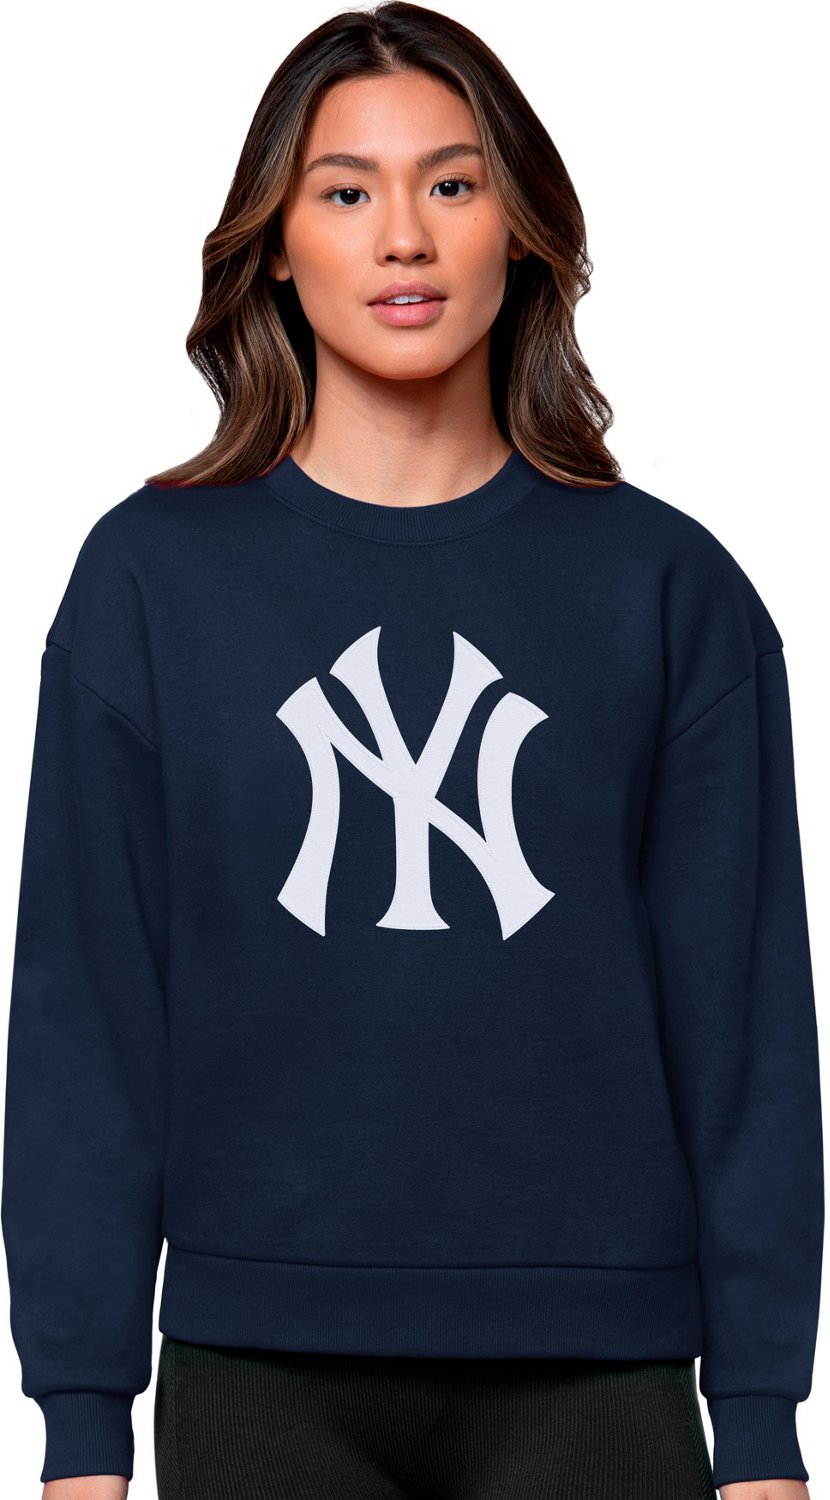 Ladies New York Yankees Hoodies, Yankees Pullover Hoodie